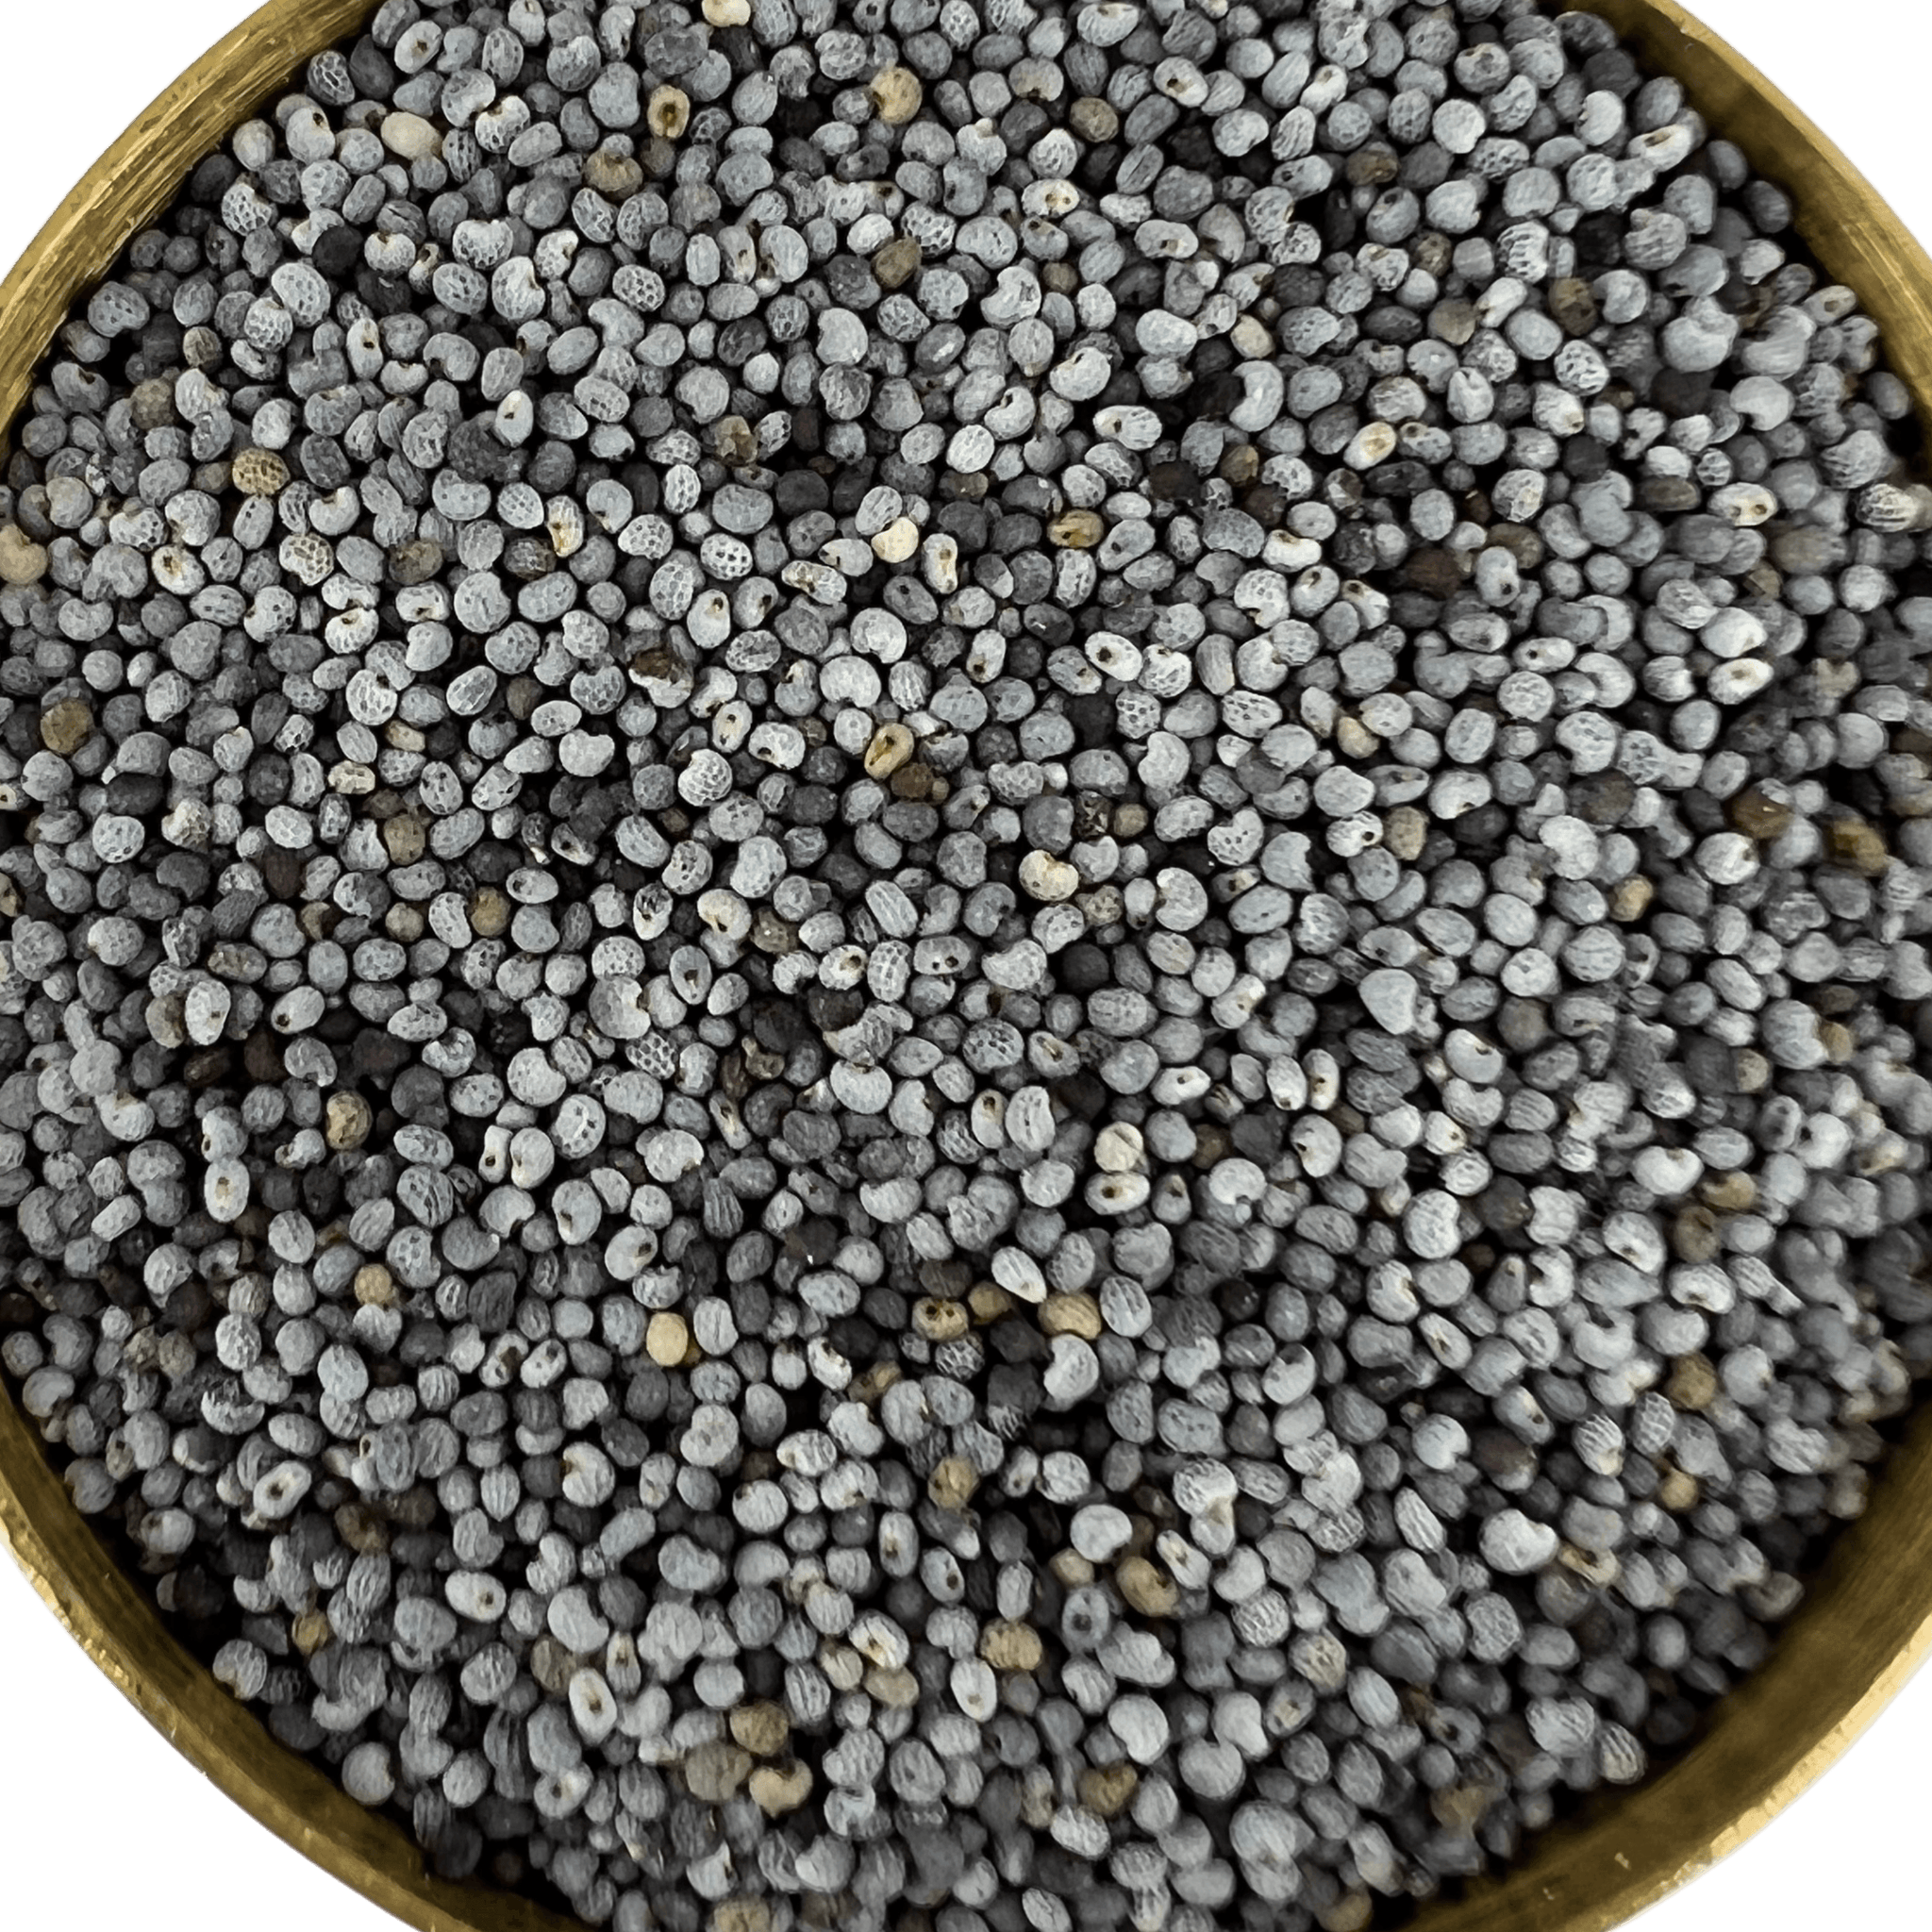 Afghan Poppy Seed